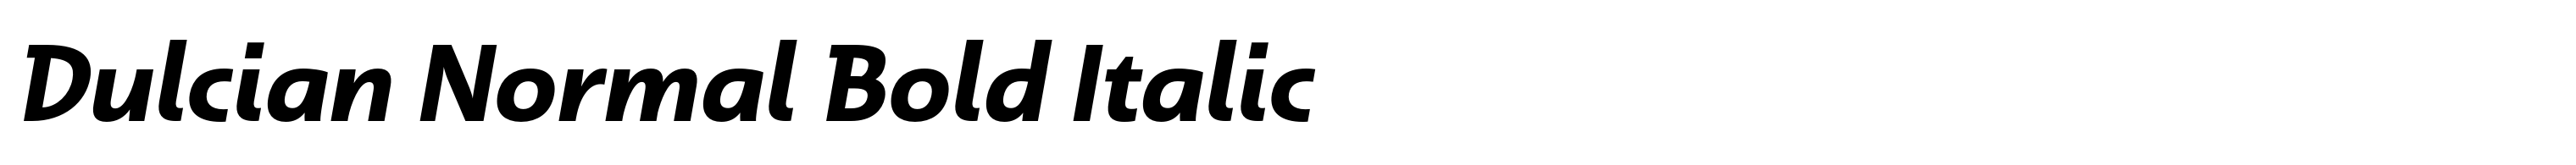 Dulcian Normal Bold Italic